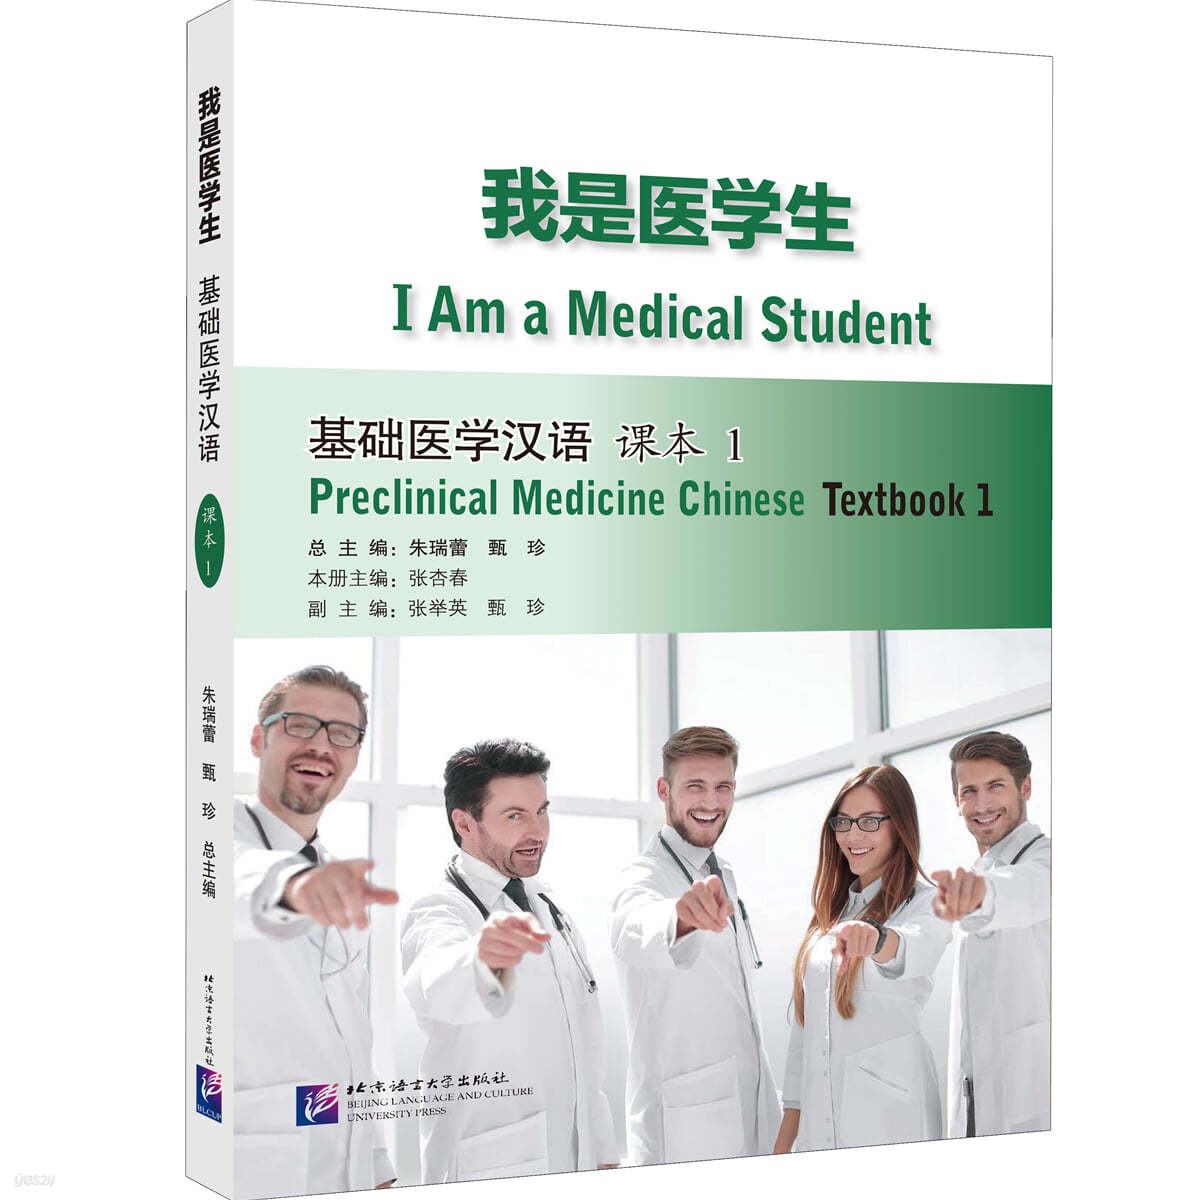 아시의학생 : 기초의학한어 과본 1 我是醫學生：基礎醫學漢語 課本1